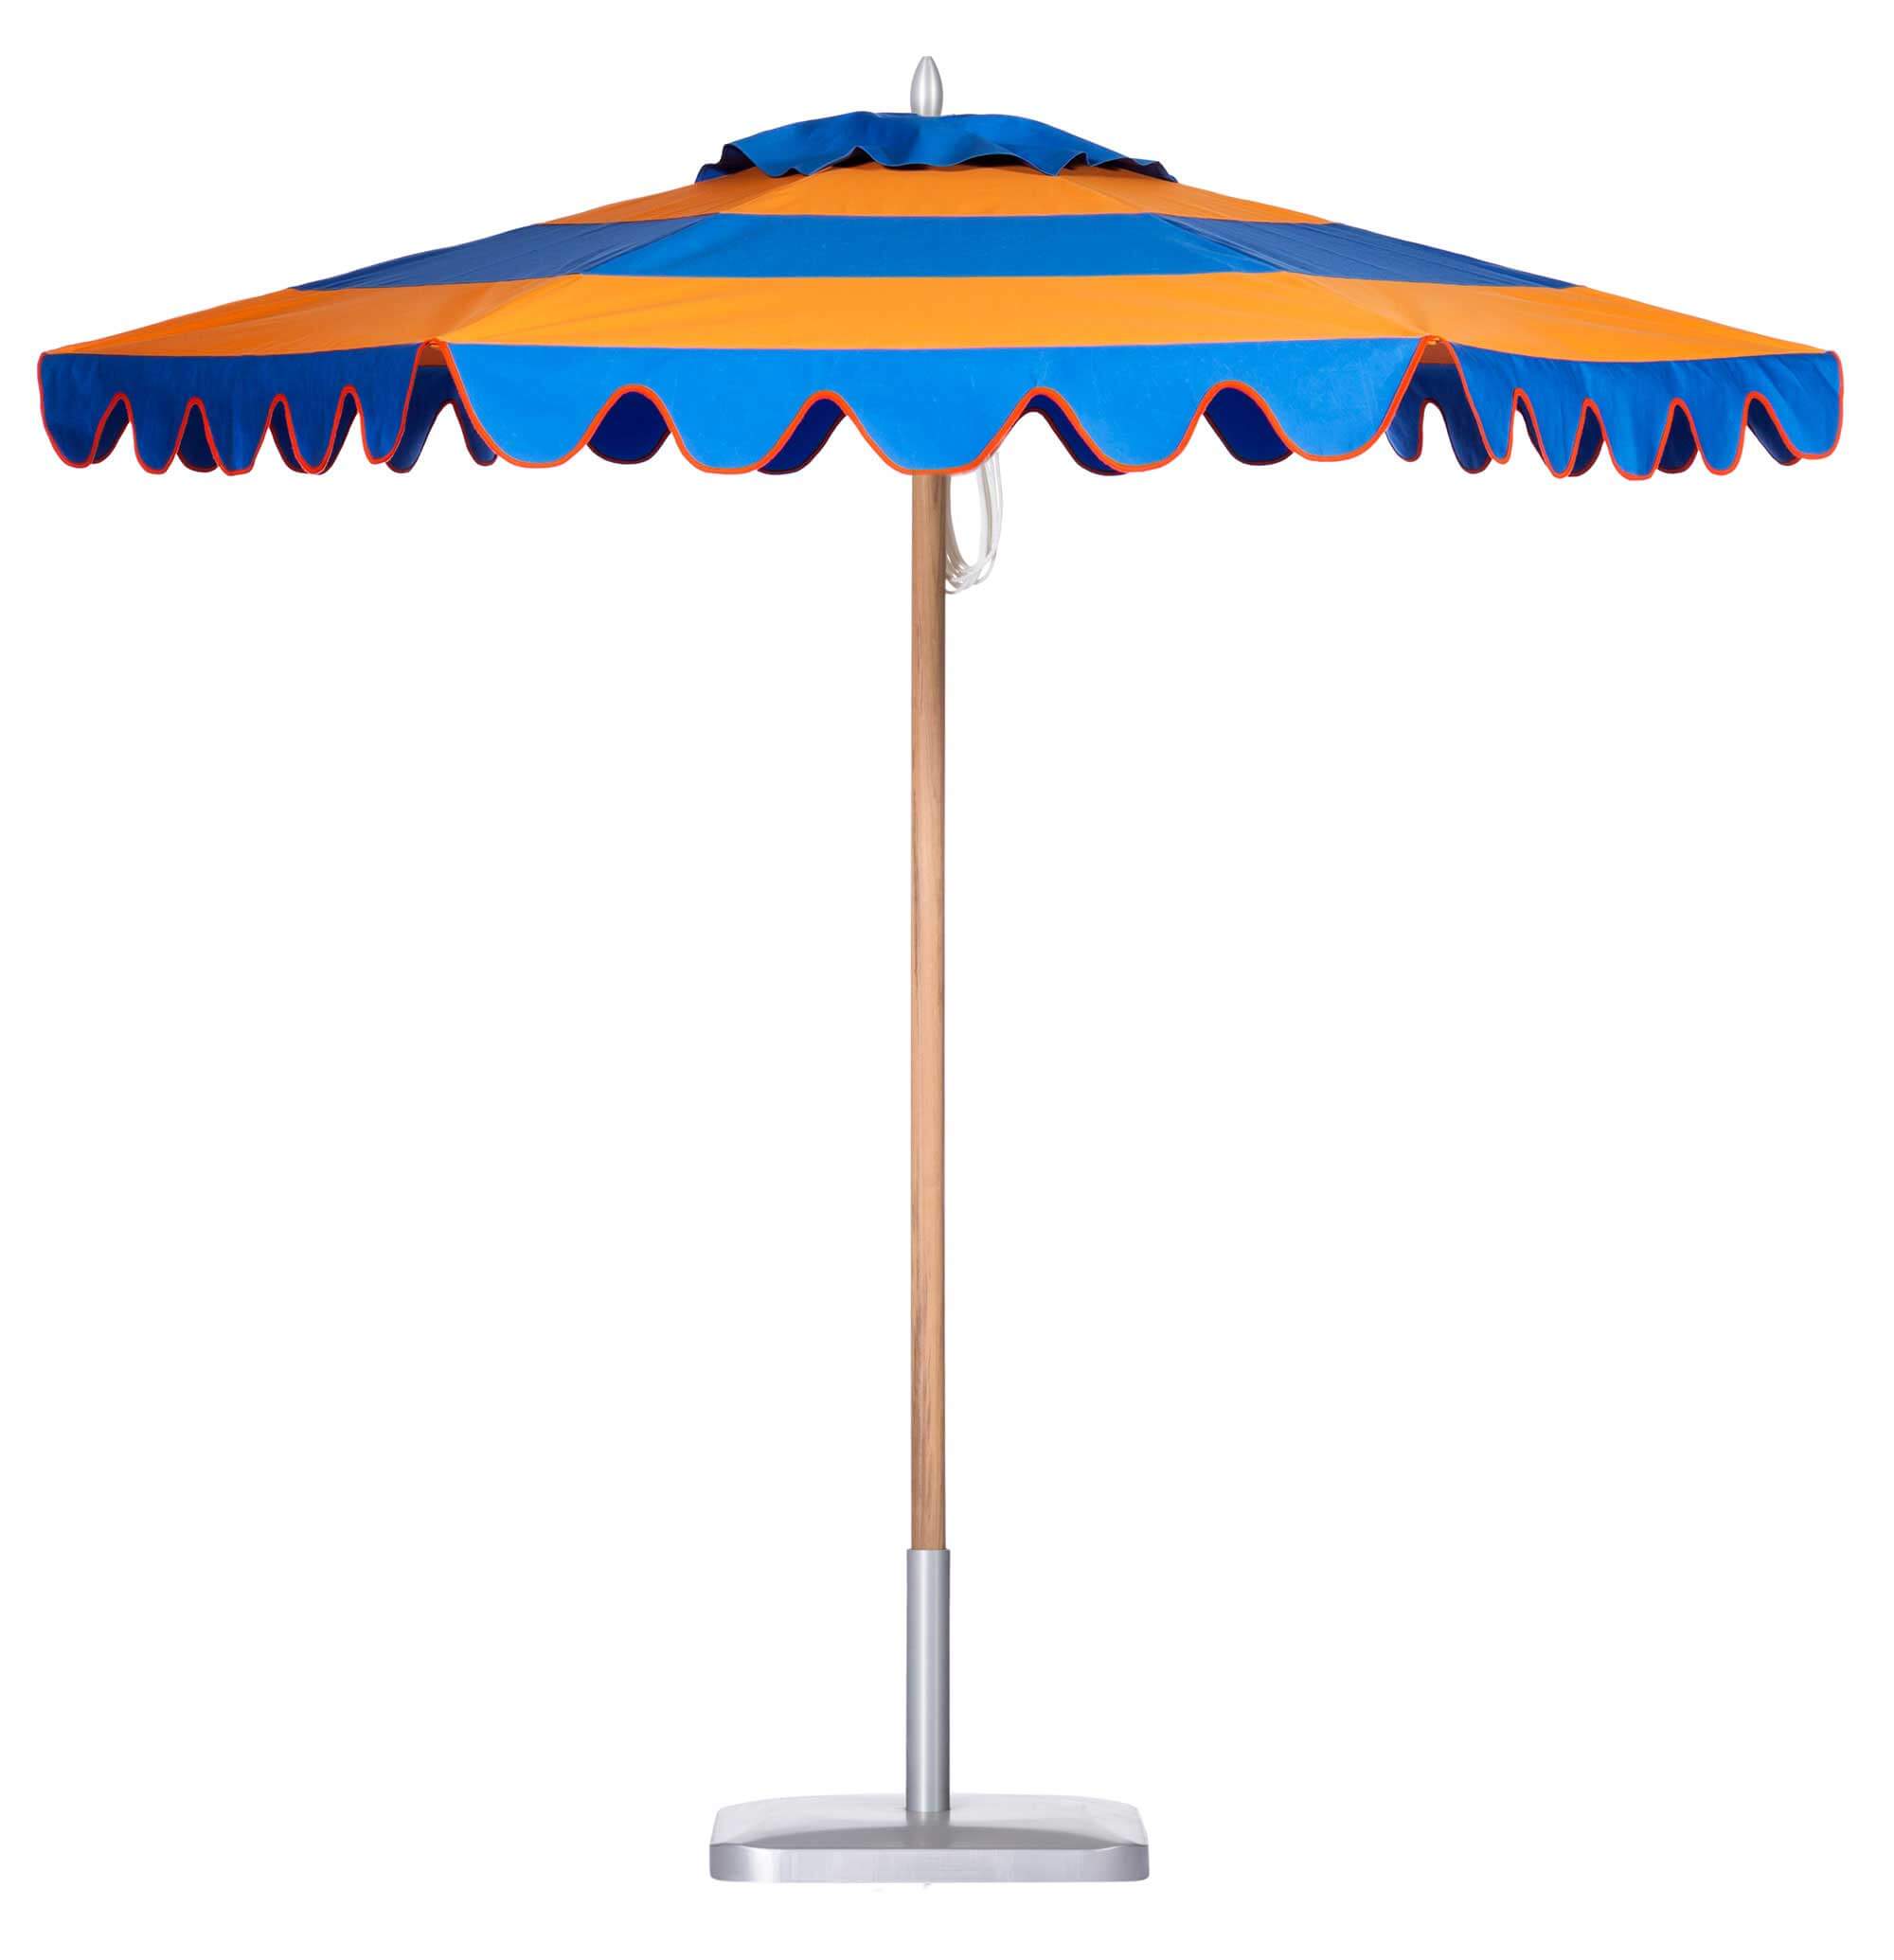 Peacock Blue / Tango Orange Umbrella Image